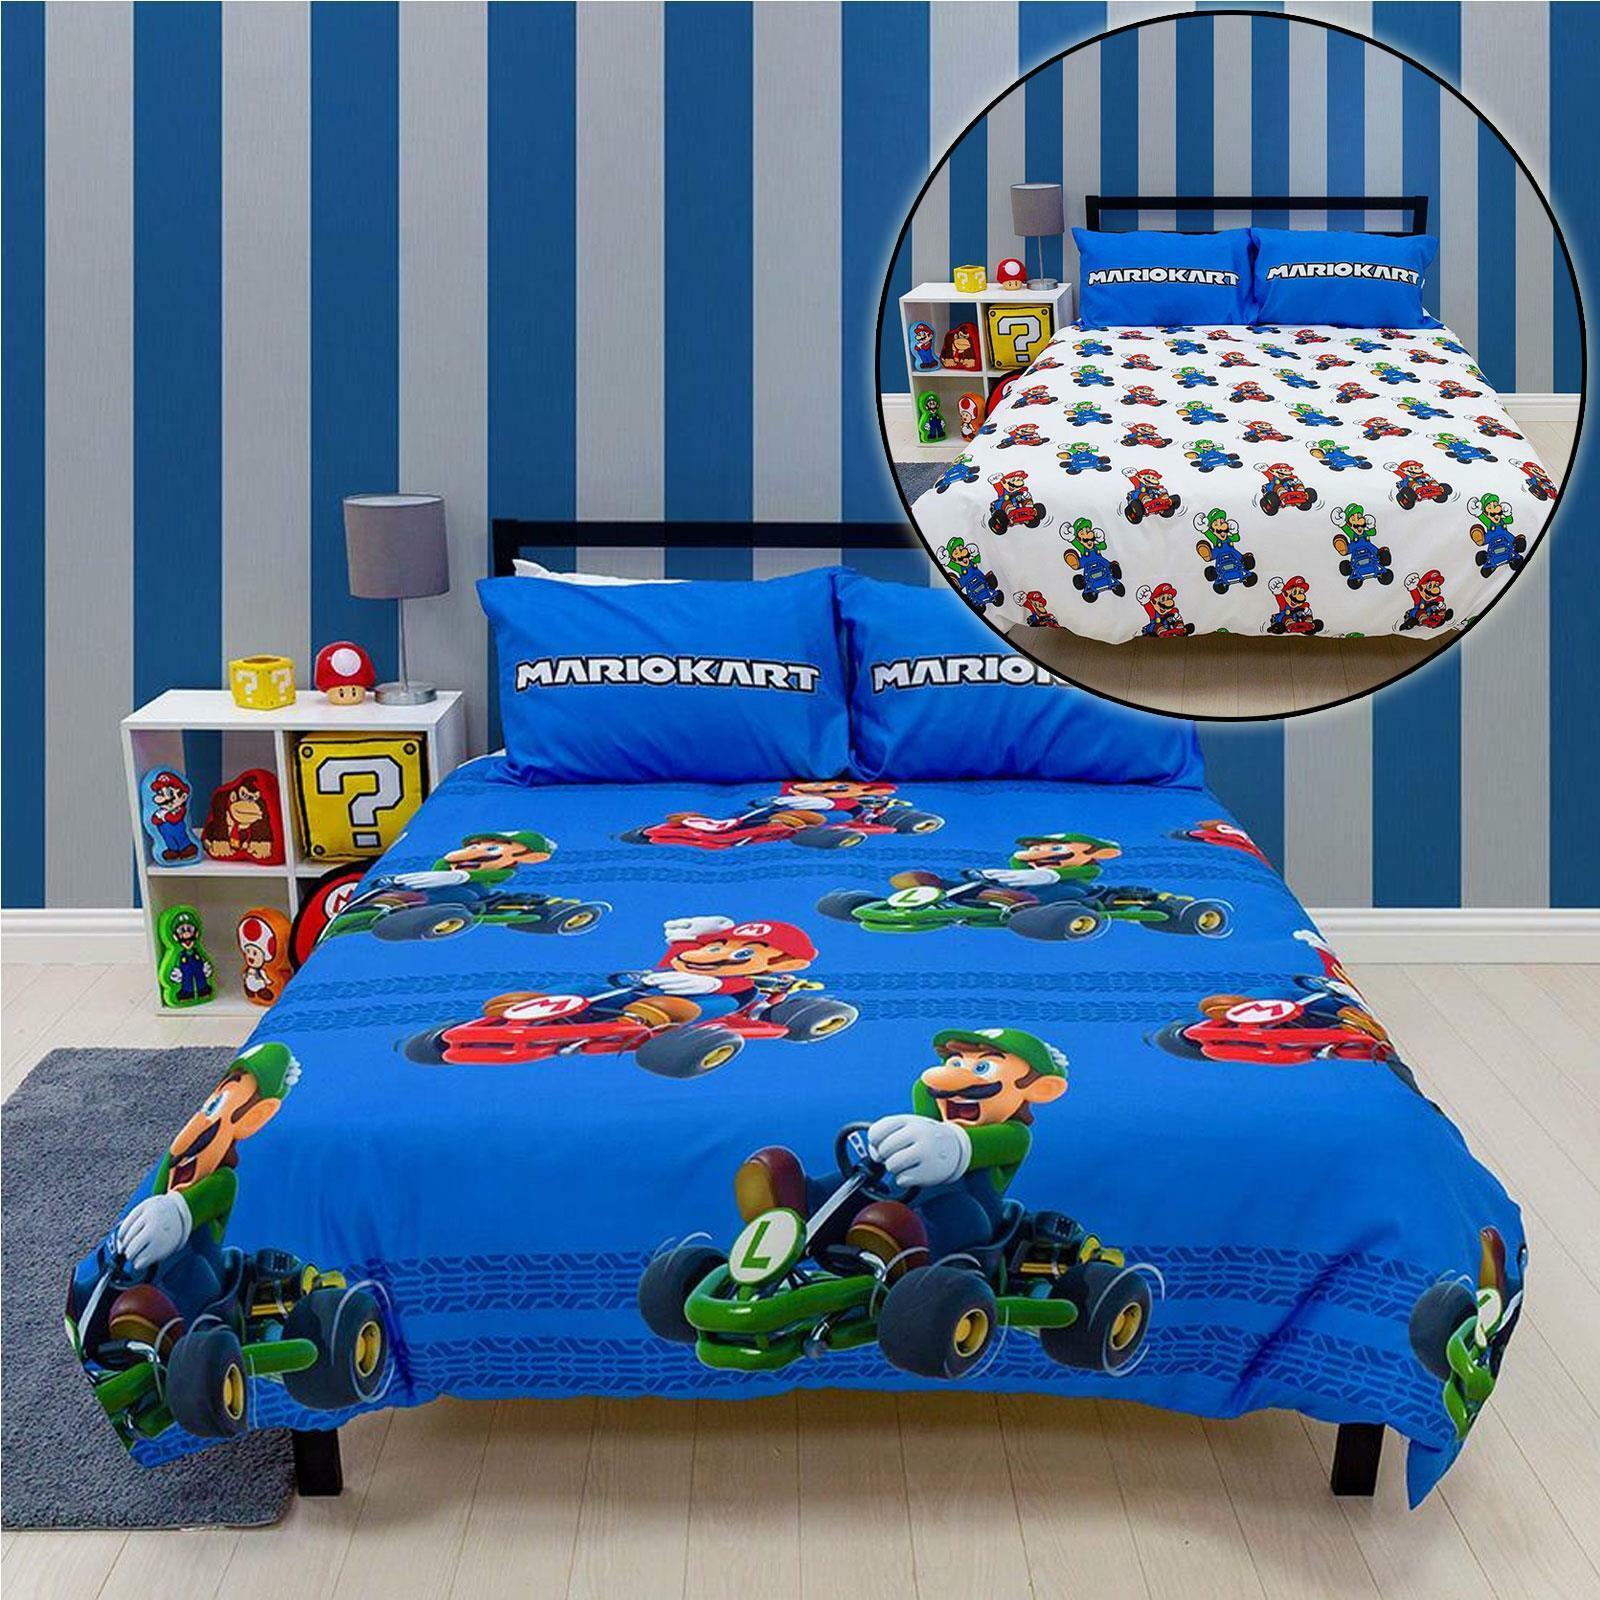 ontrouw Samenstelling Versnipperd Super Mario dekbedovertrek tweepersoons blauw 200 x 200 cm - Dekbeddengoed  - Beddengoed kopen